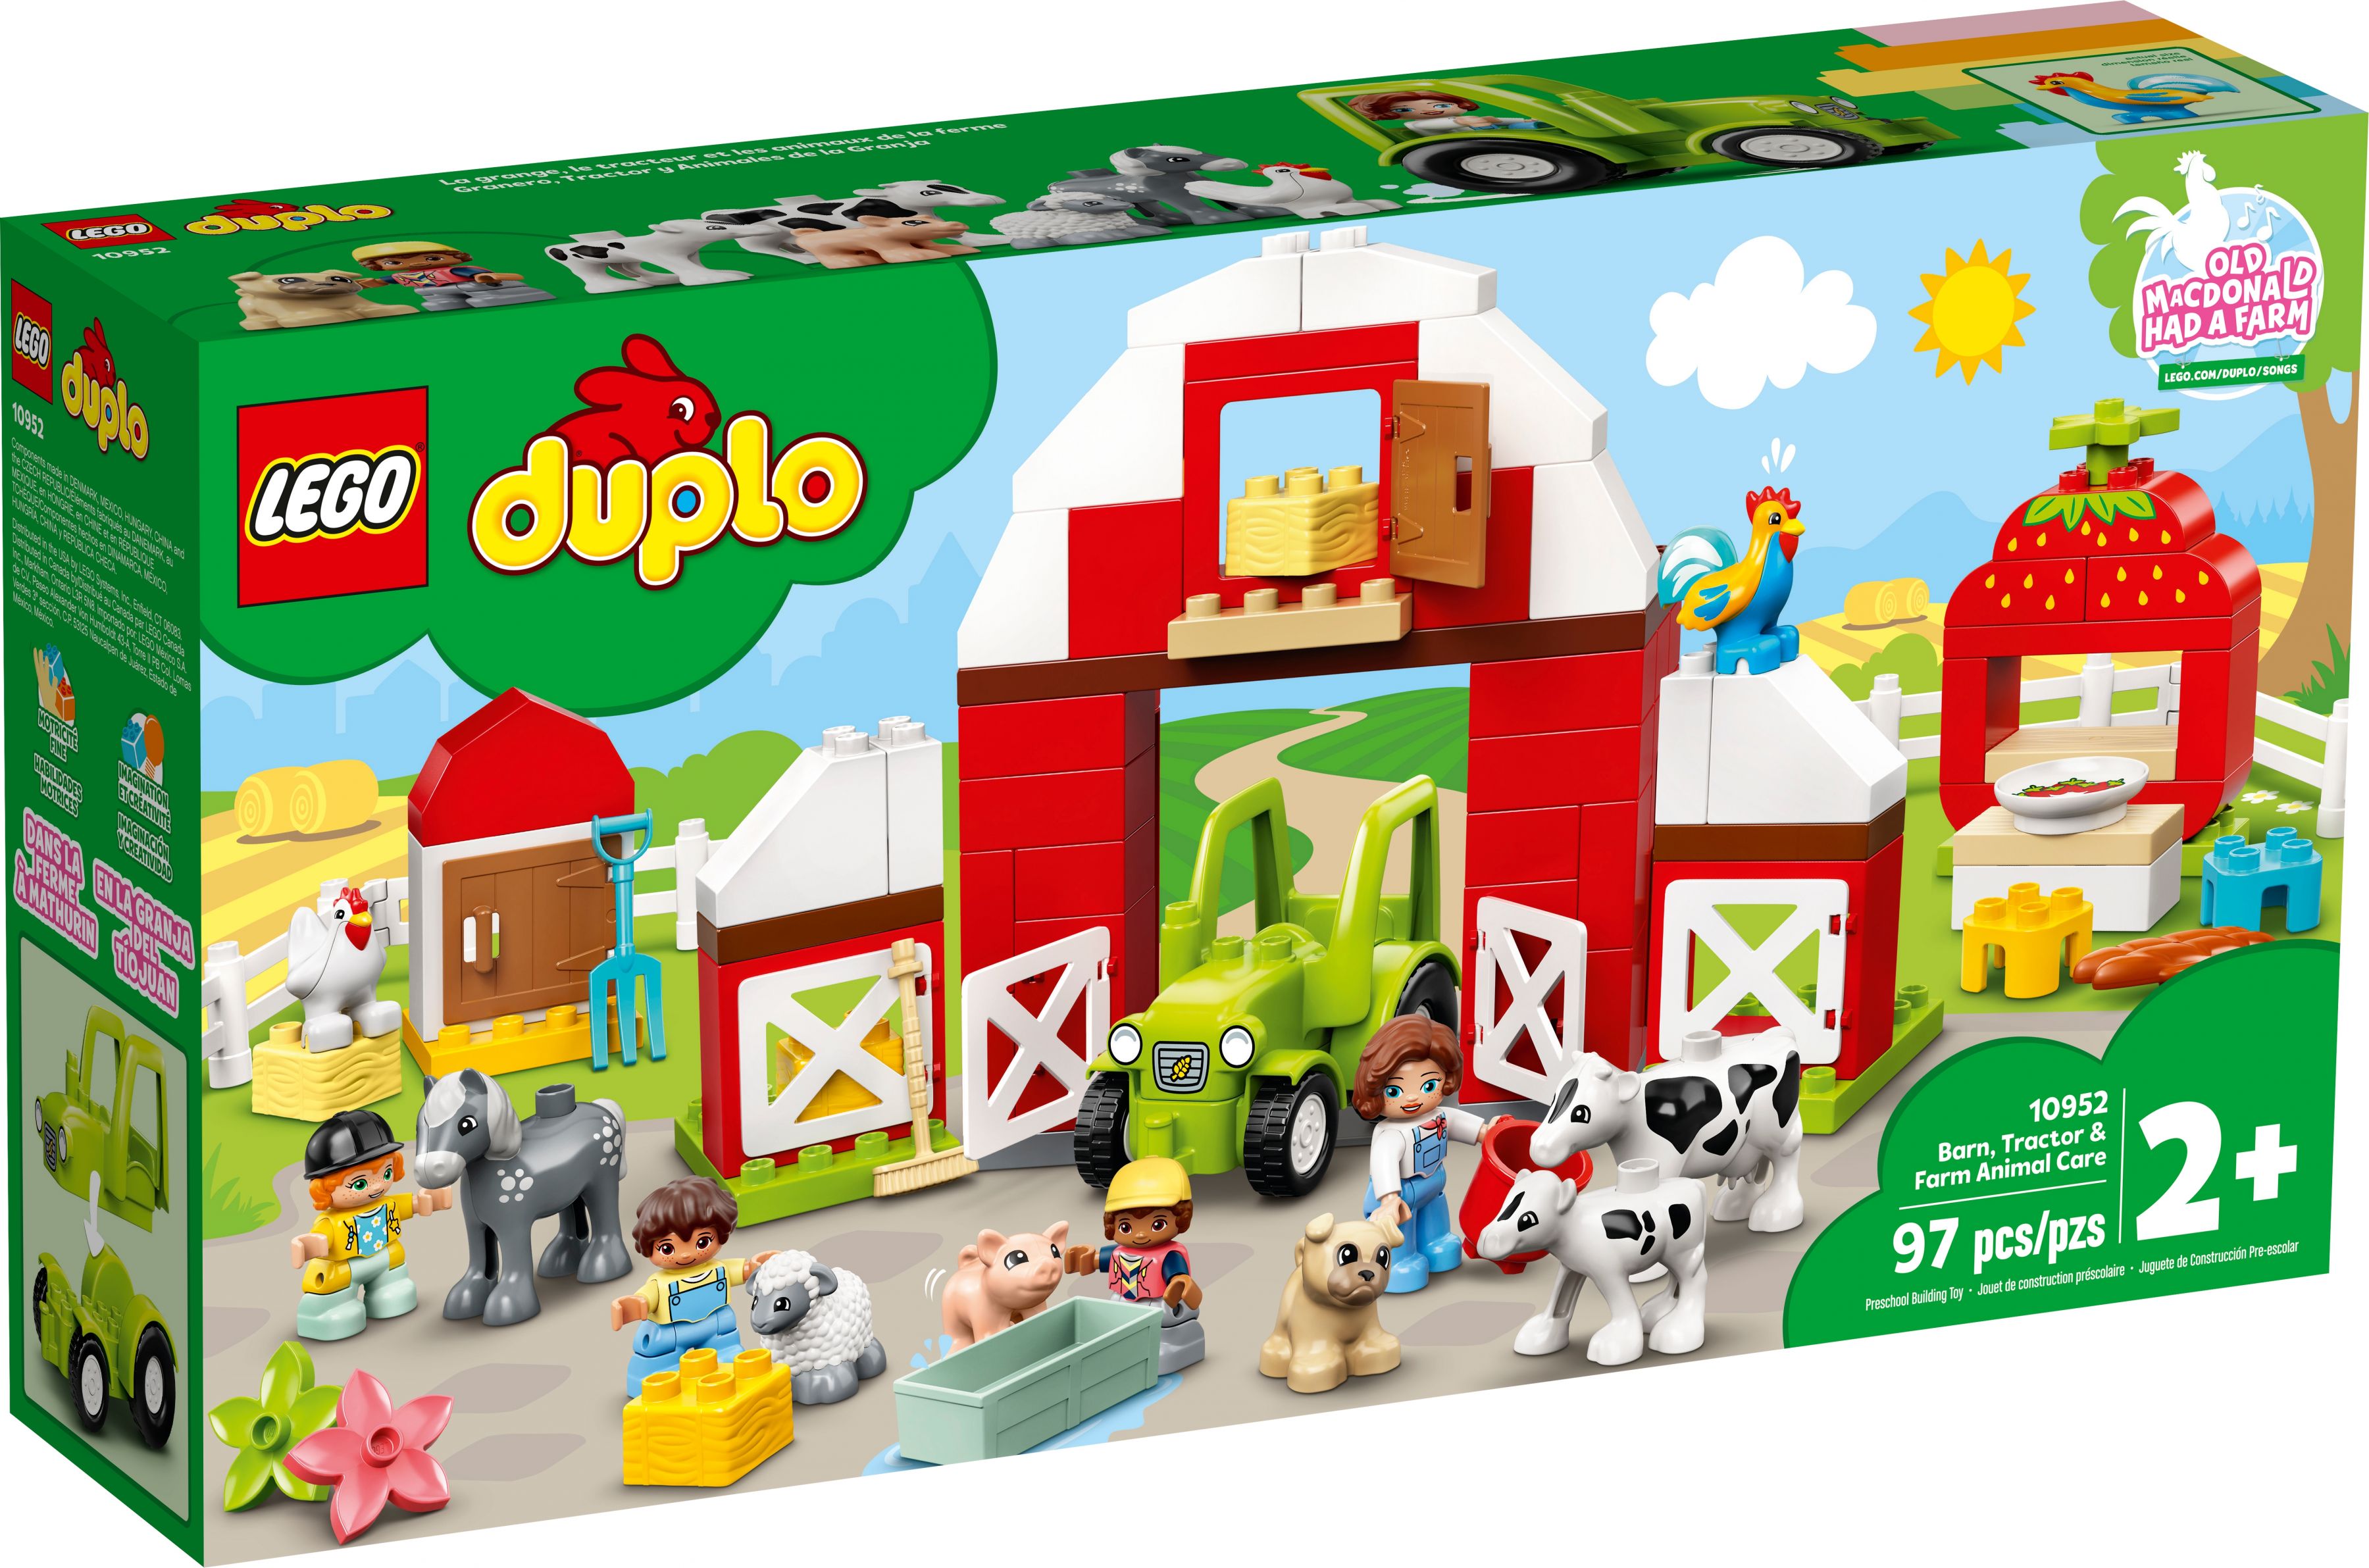 LEGO Duplo 10952 Scheune, Traktor und Tierpflege LEGO_10952_box1_v39.jpg